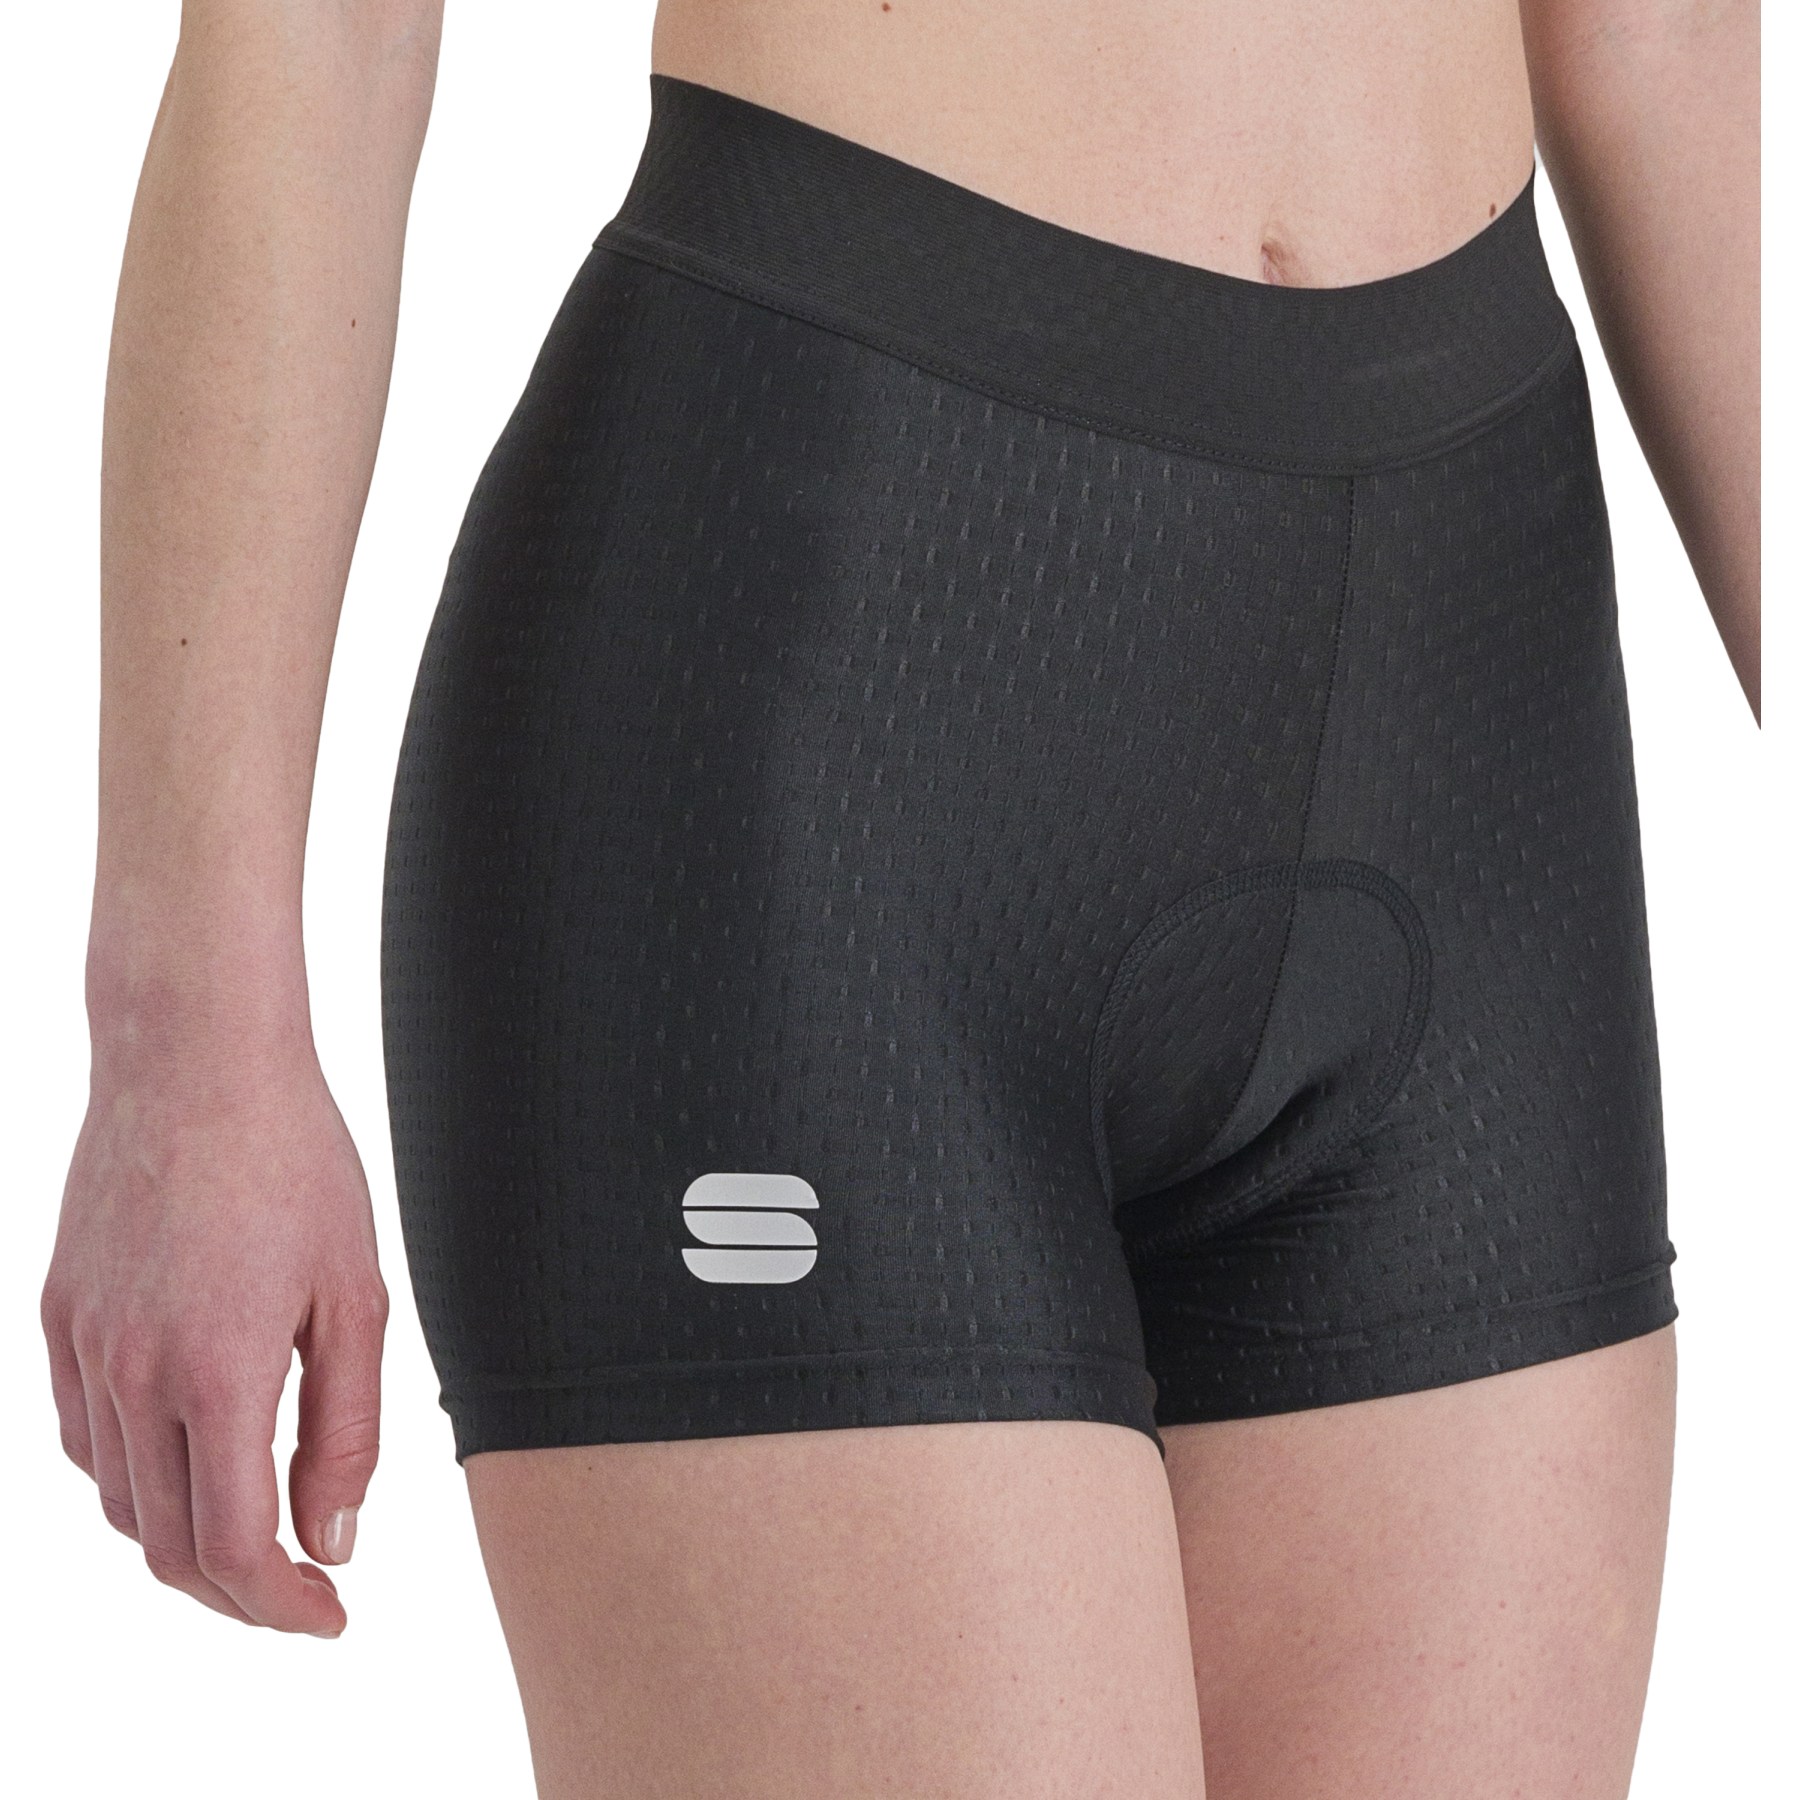 Produktbild von Sportful Cycling Damen-Unterhose kurz - 002 Schwarz